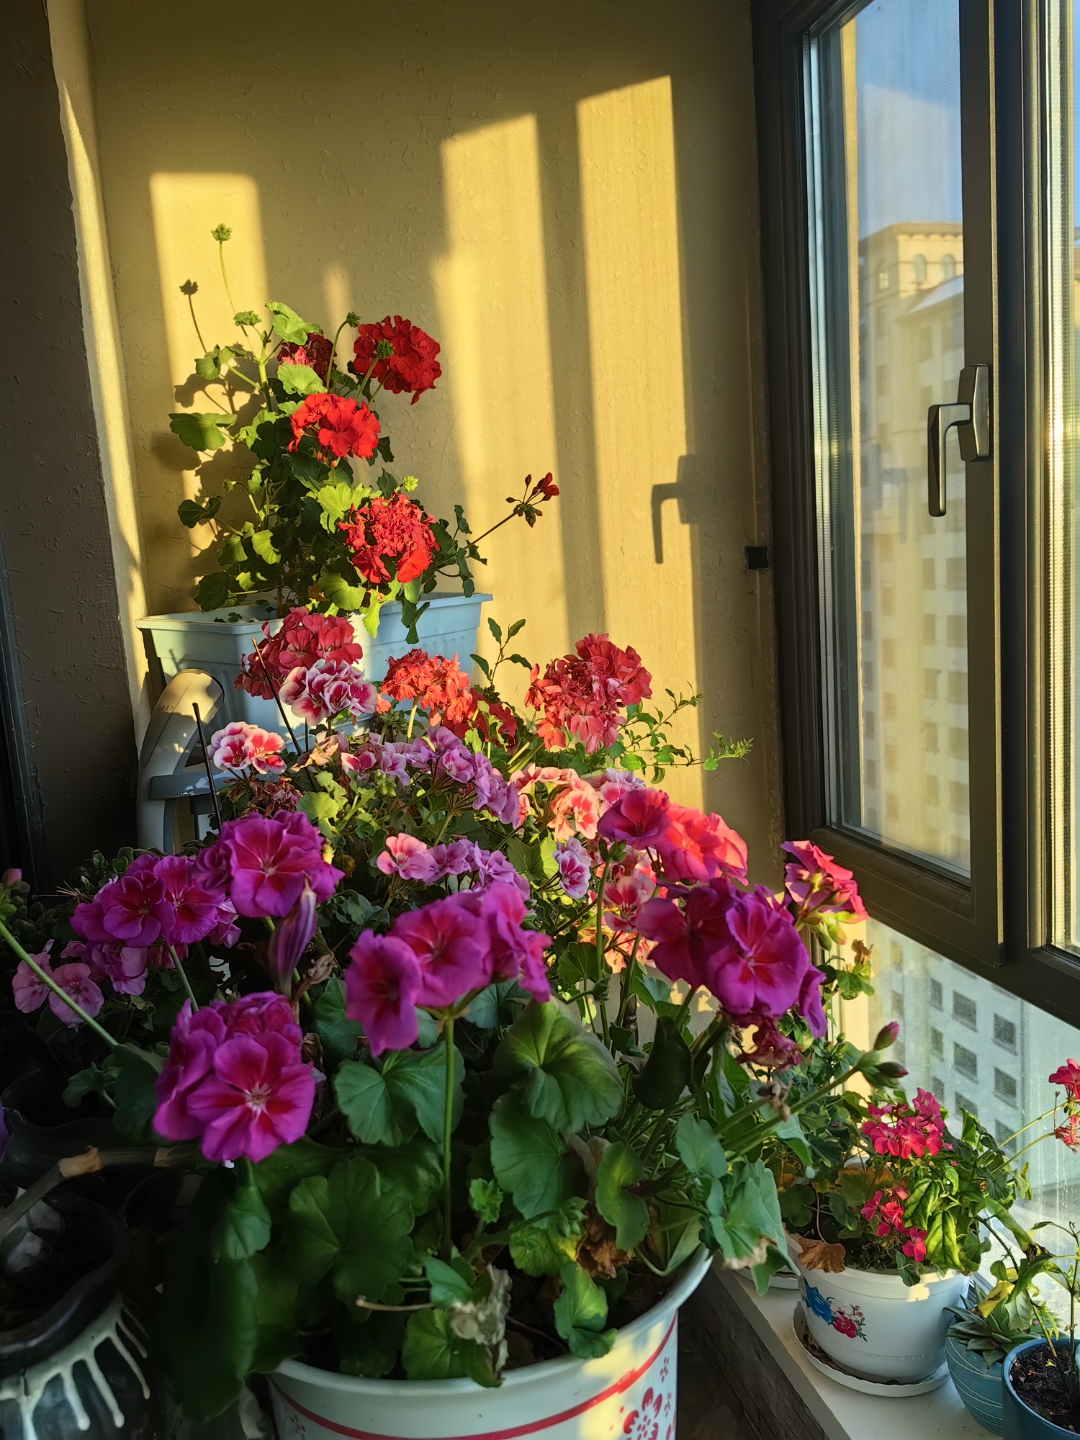 今天的窗台,天竺葵在阳光下轻轻摇曳,每一片花瓣都盛满了阳光的吻痕